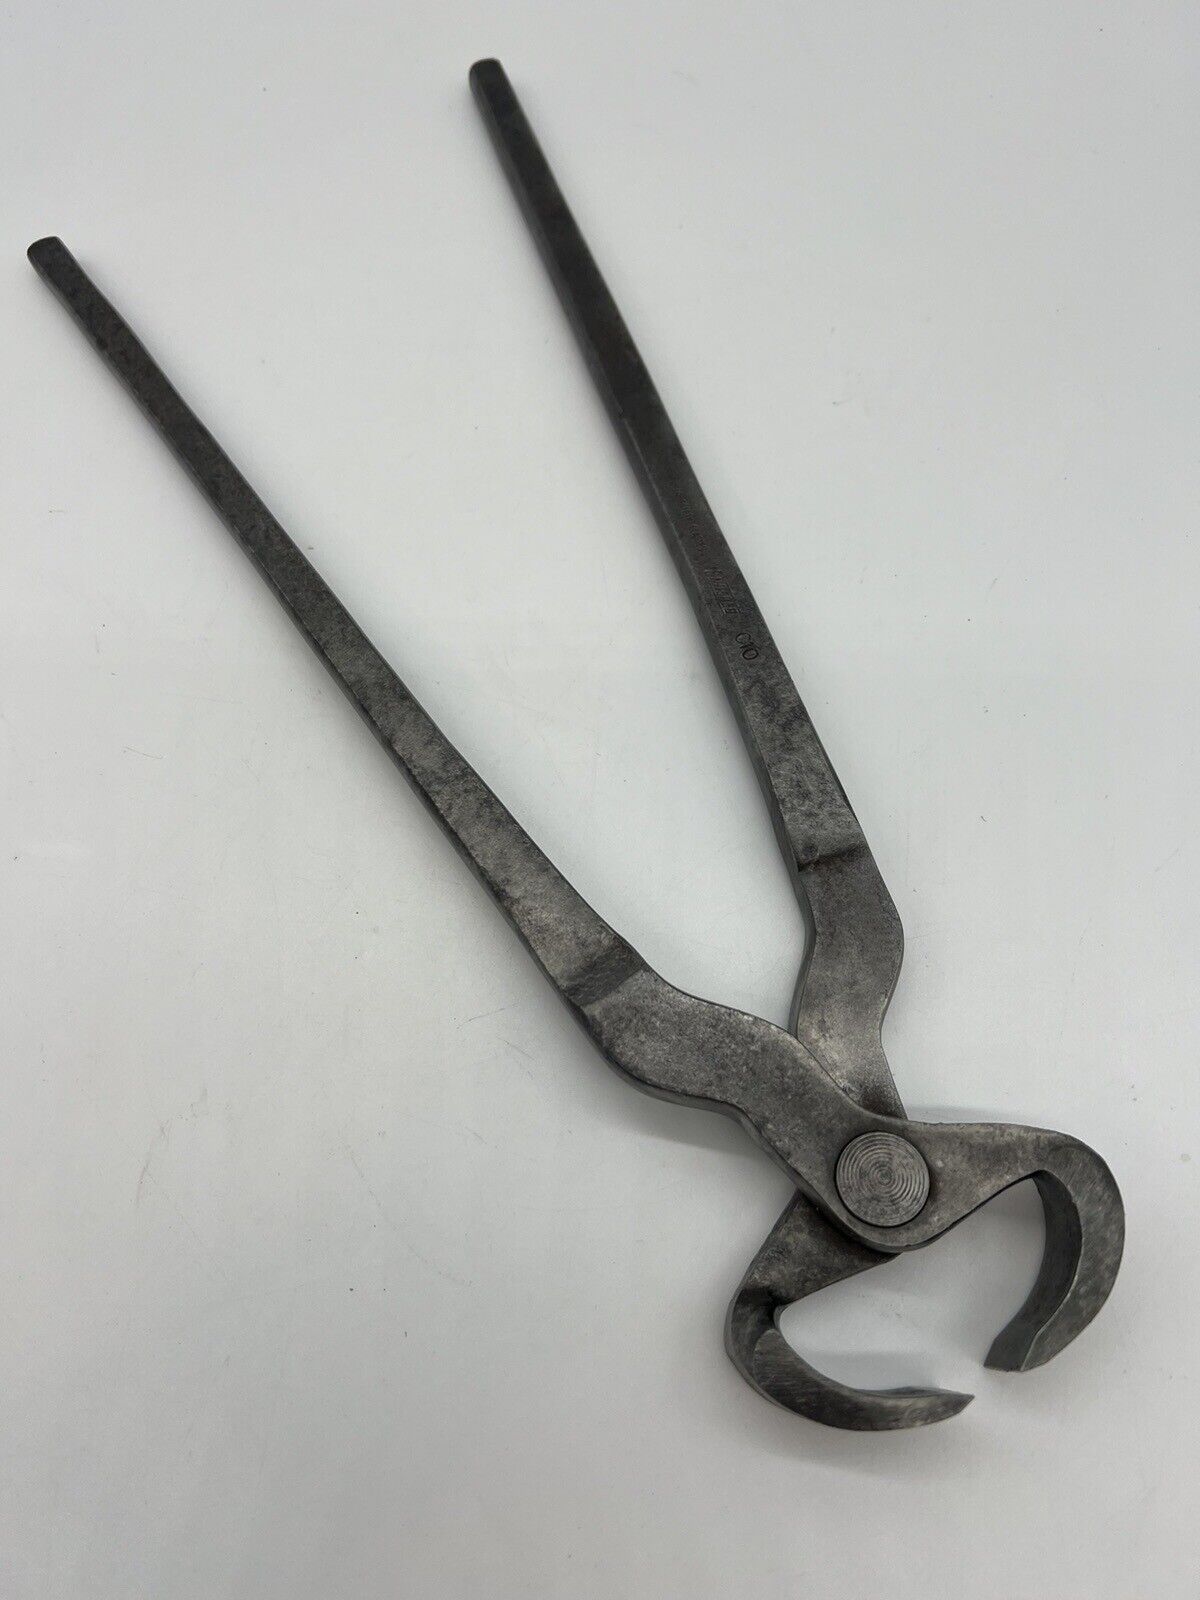 Vintage Enderes C10 Nippers Cutters Tool, Blacksmithing, Metalworking  14 in